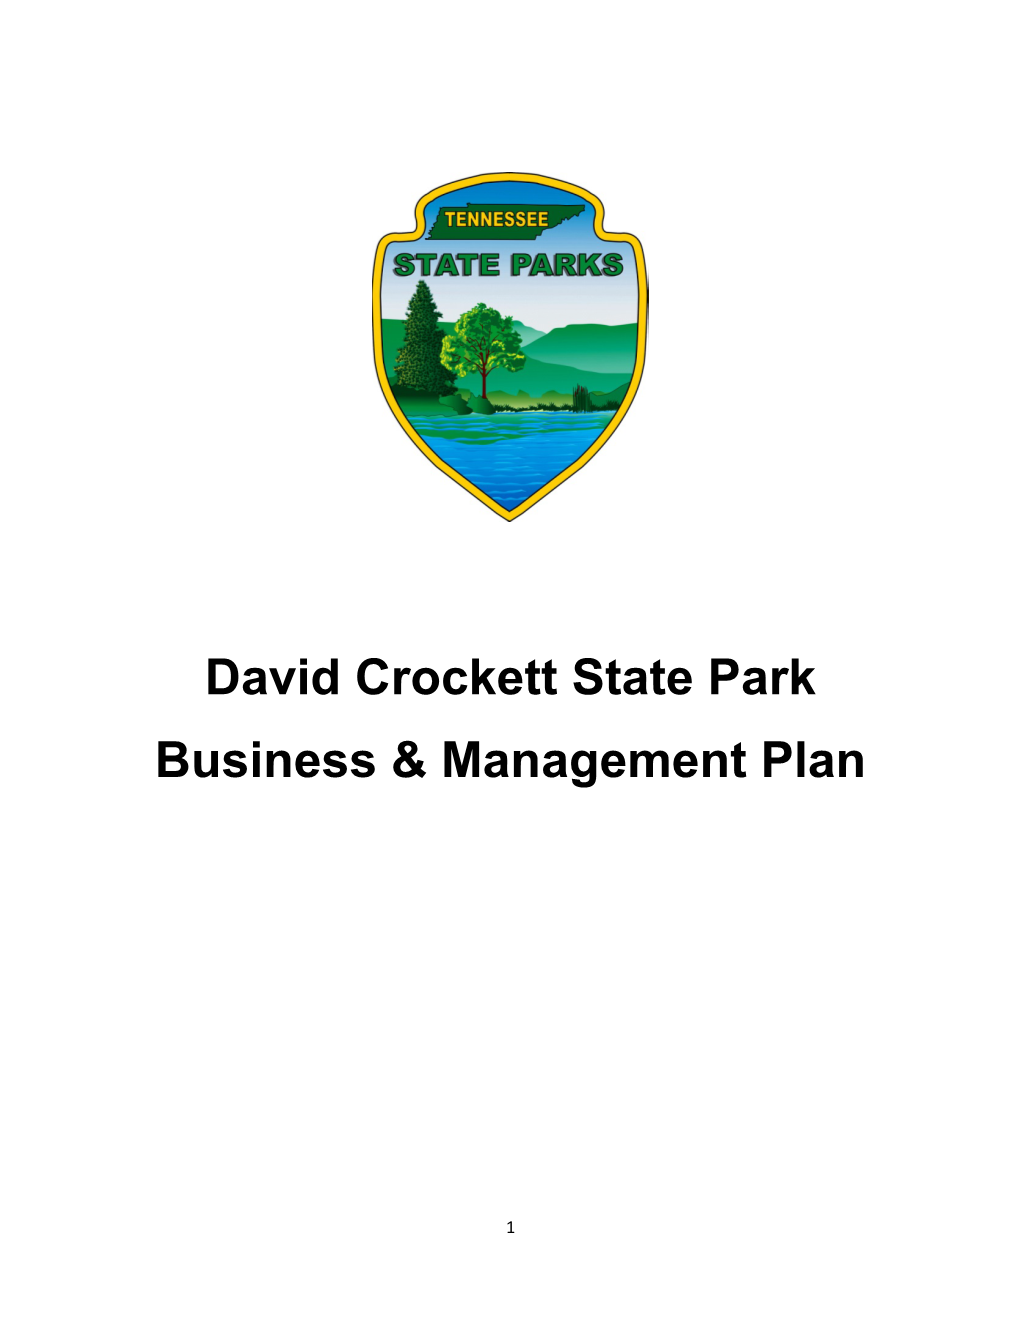 David Crockett State Park Business Plan